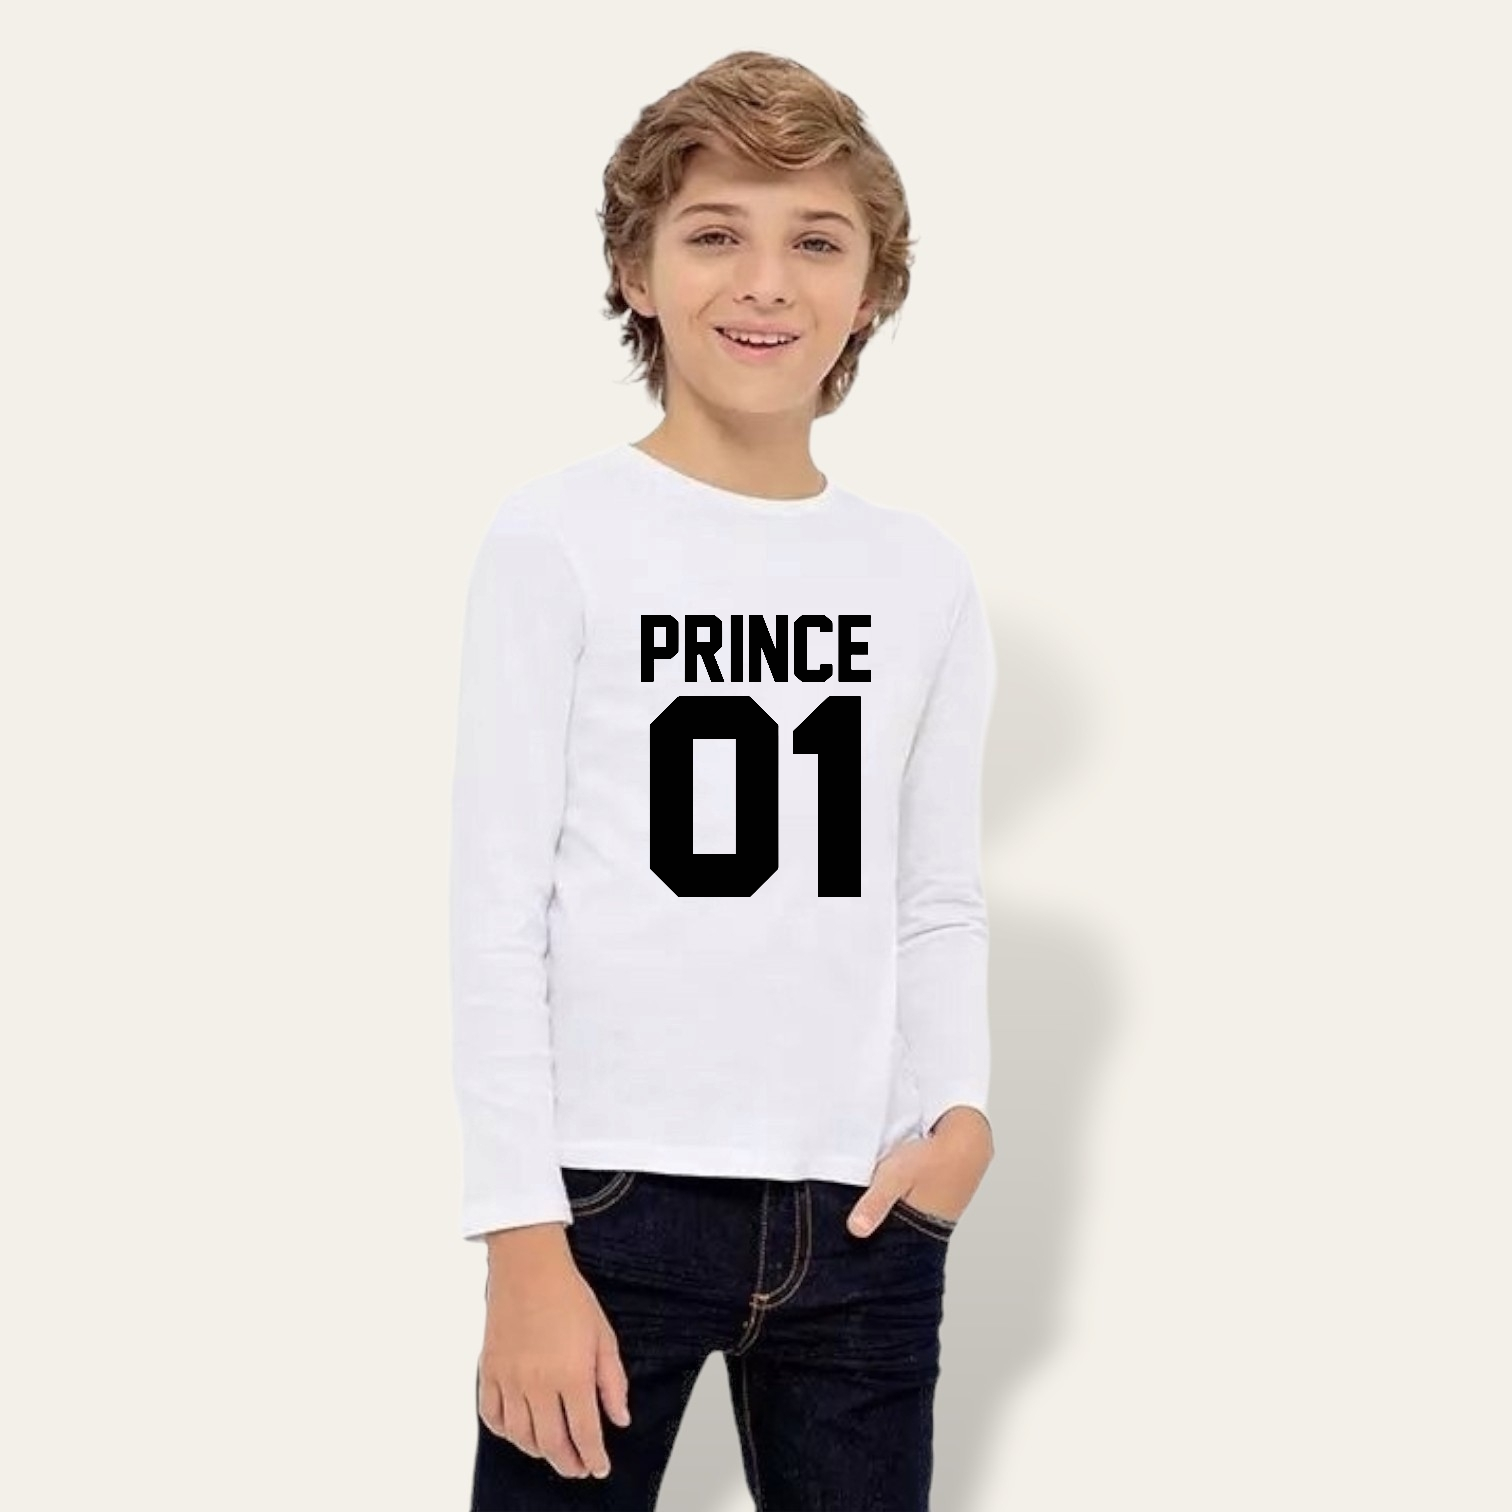 Camiseta King-Queen-Princess-Prince manga larga!!